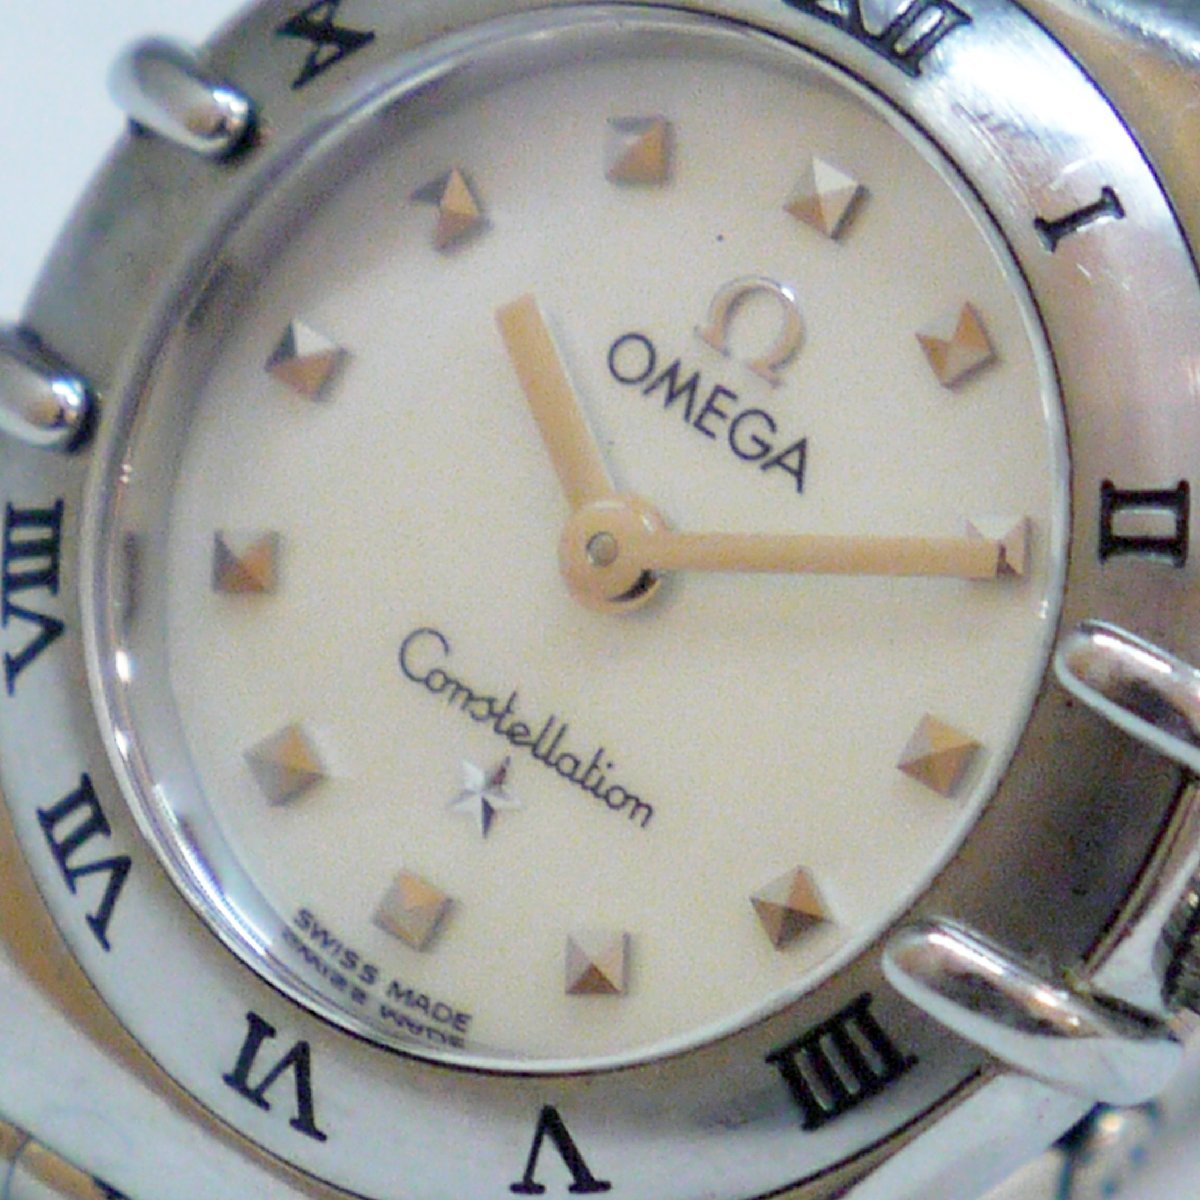 送料無料 USED品・動作品 OMEGA オメガ 1561.71 コンステレーション ミニ マイチョイス シェル文字盤 クオーツ 2針 SS レディース 腕時計 - 3